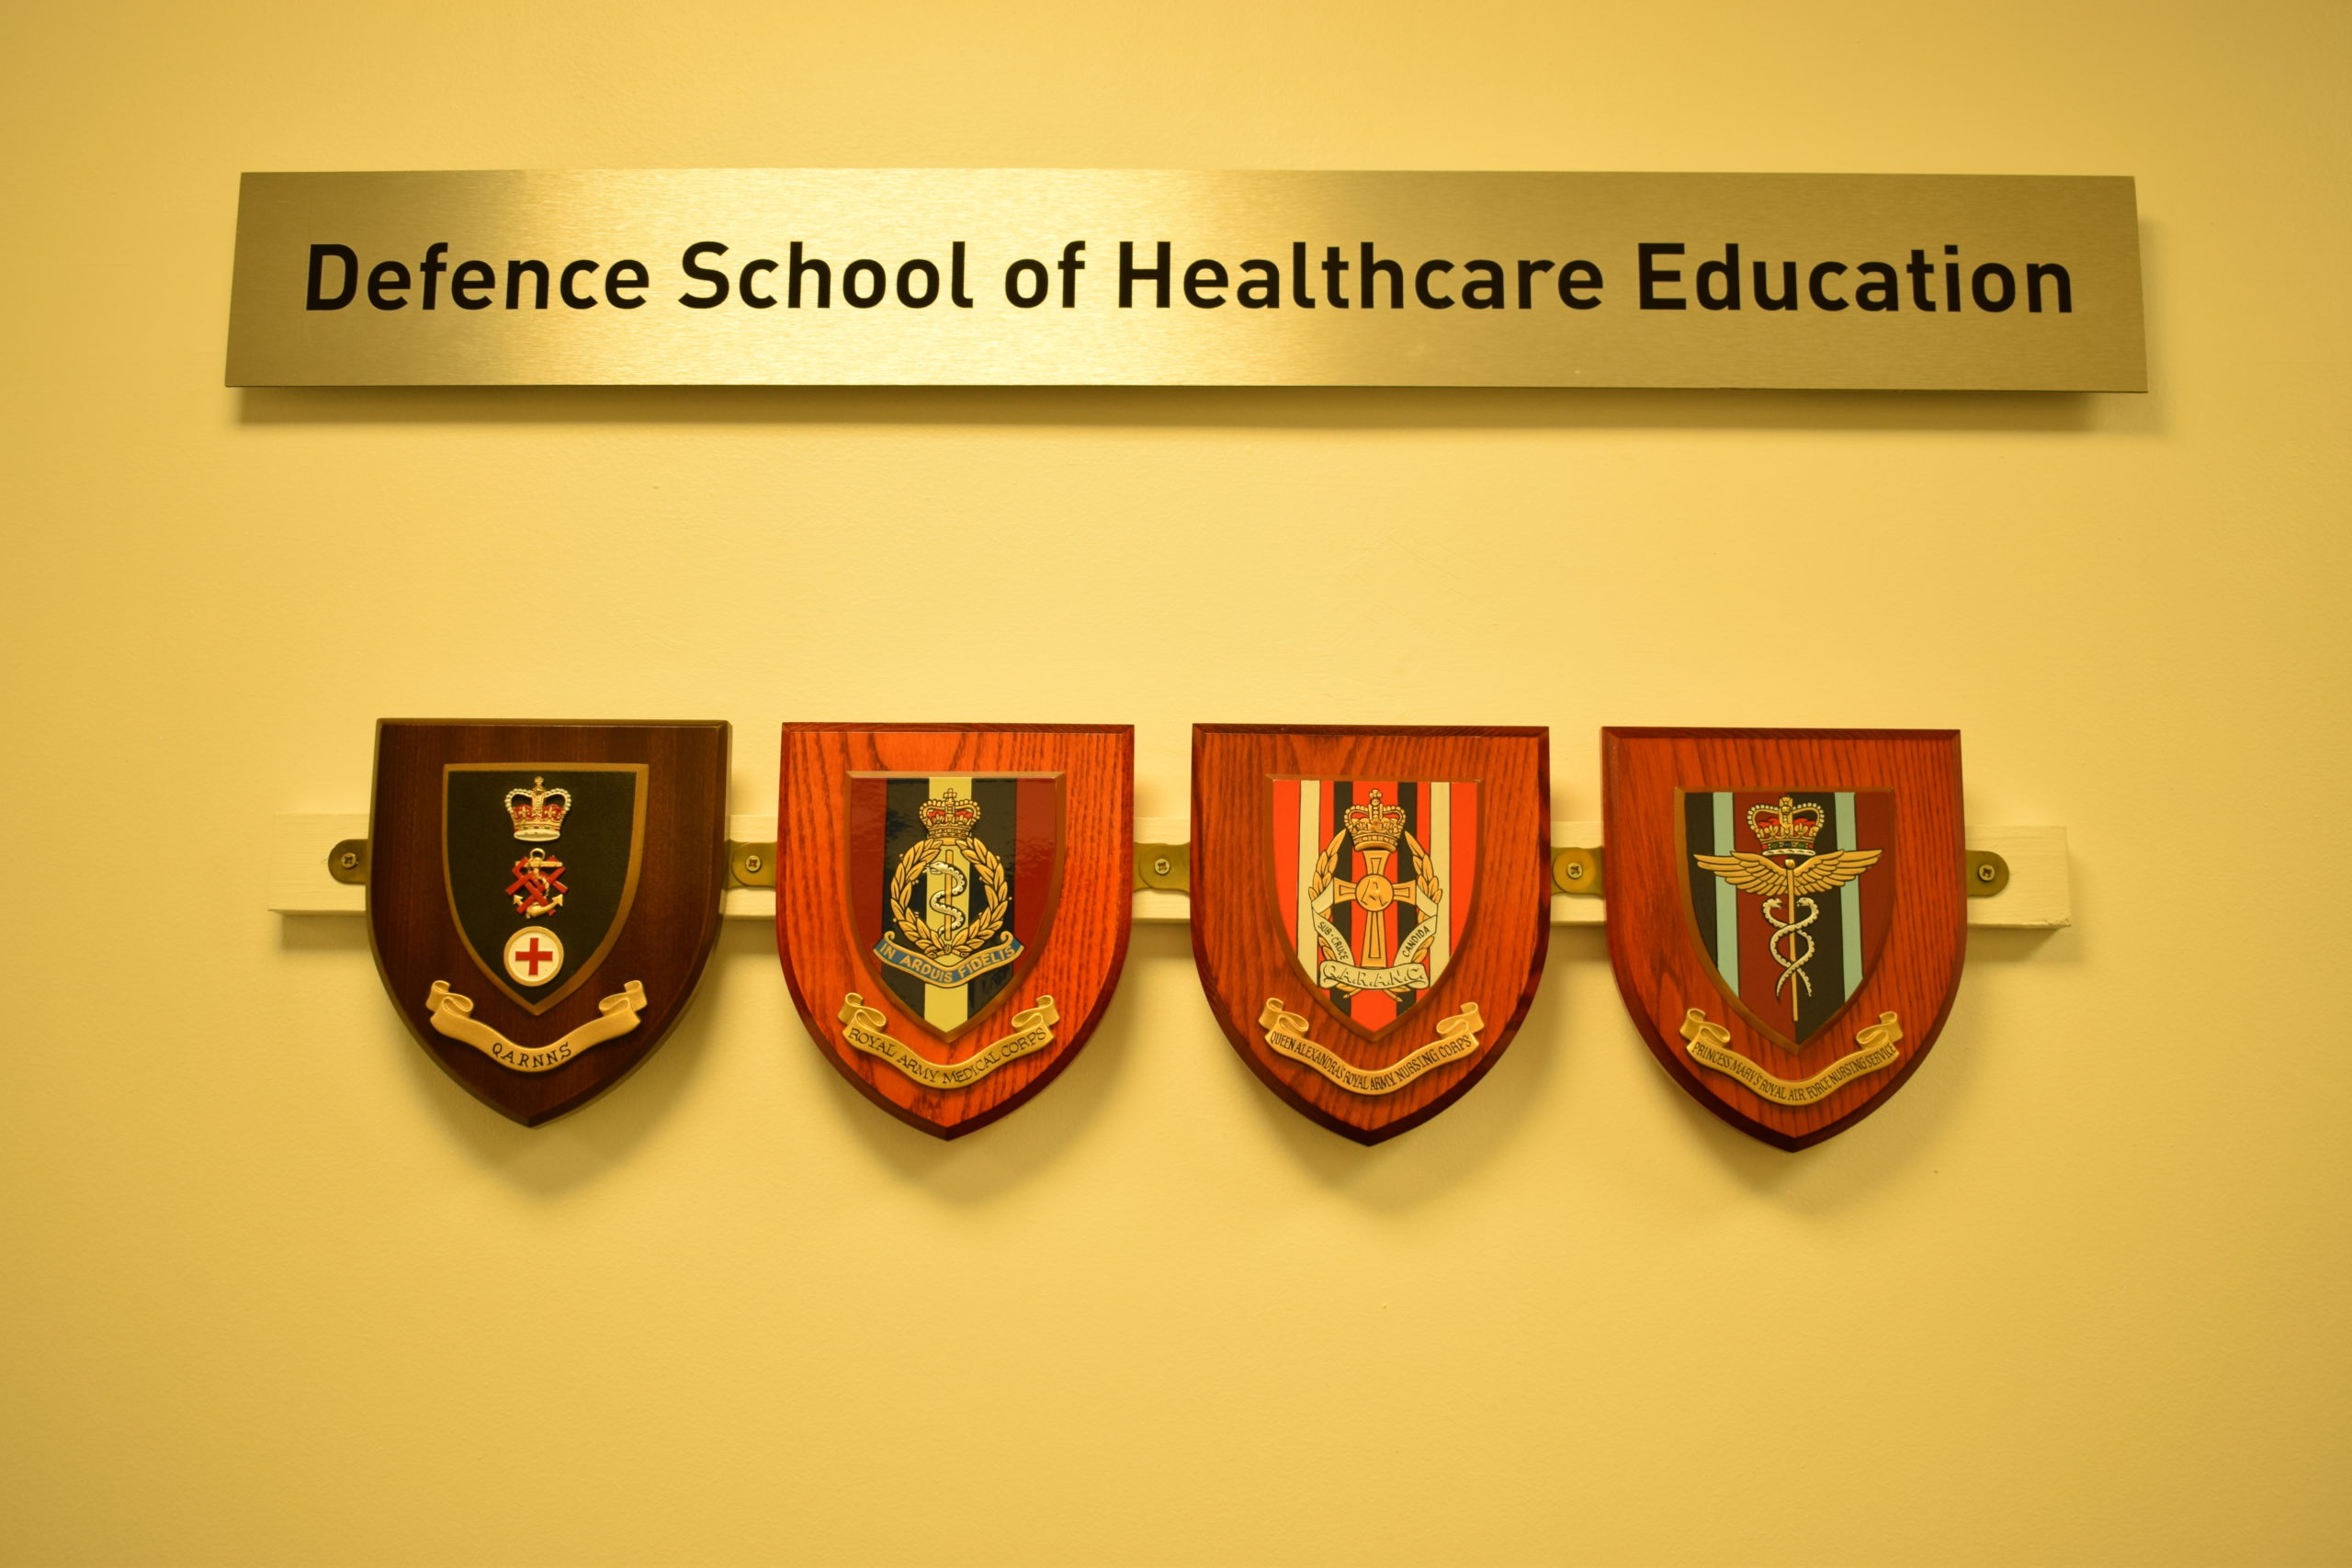 Defence School of Healthcare Education logo